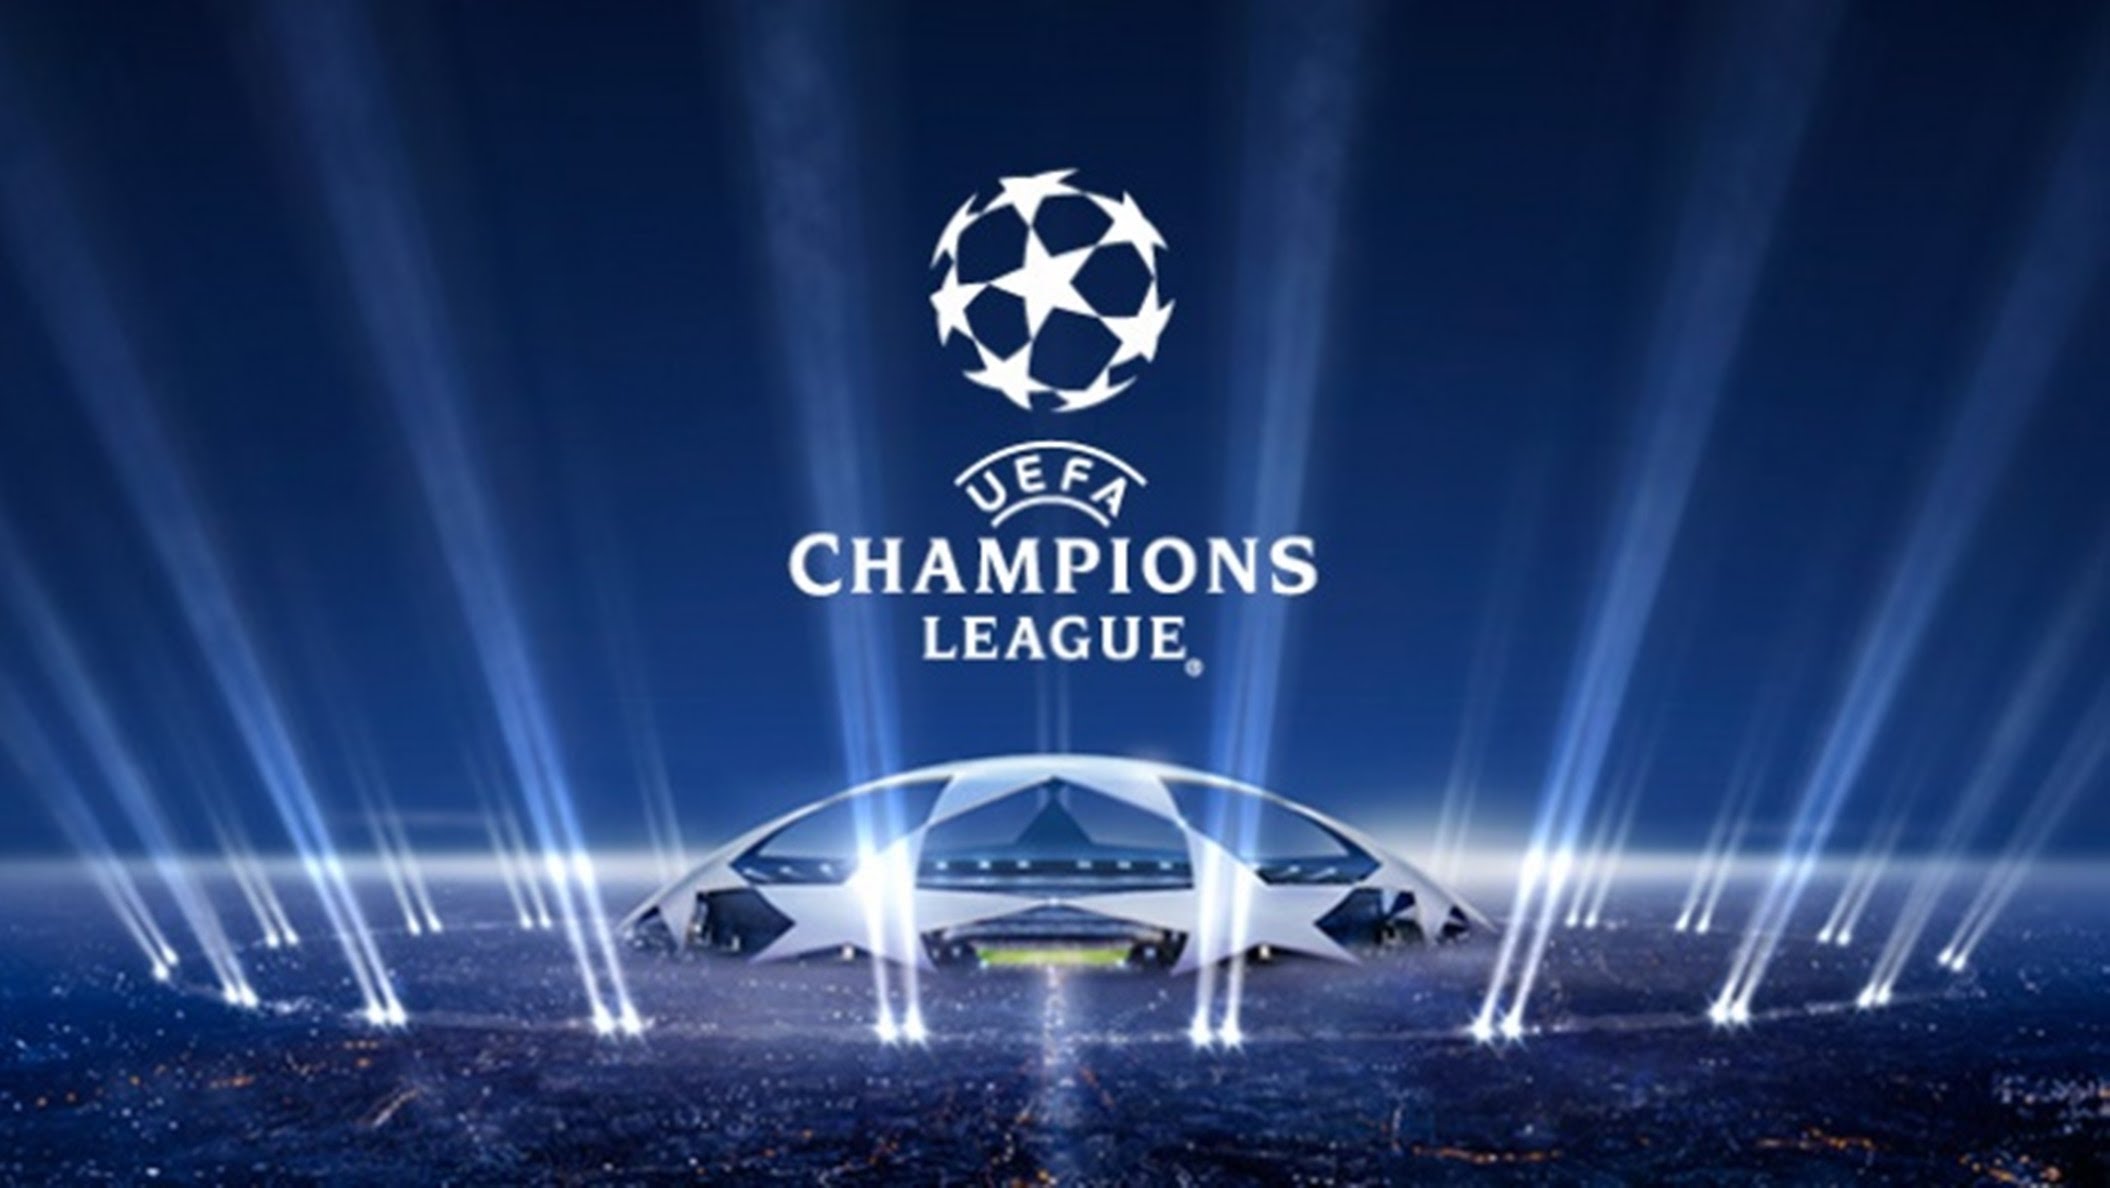 Champions League: Που θα δούμε τον μεγάλο τελικό;